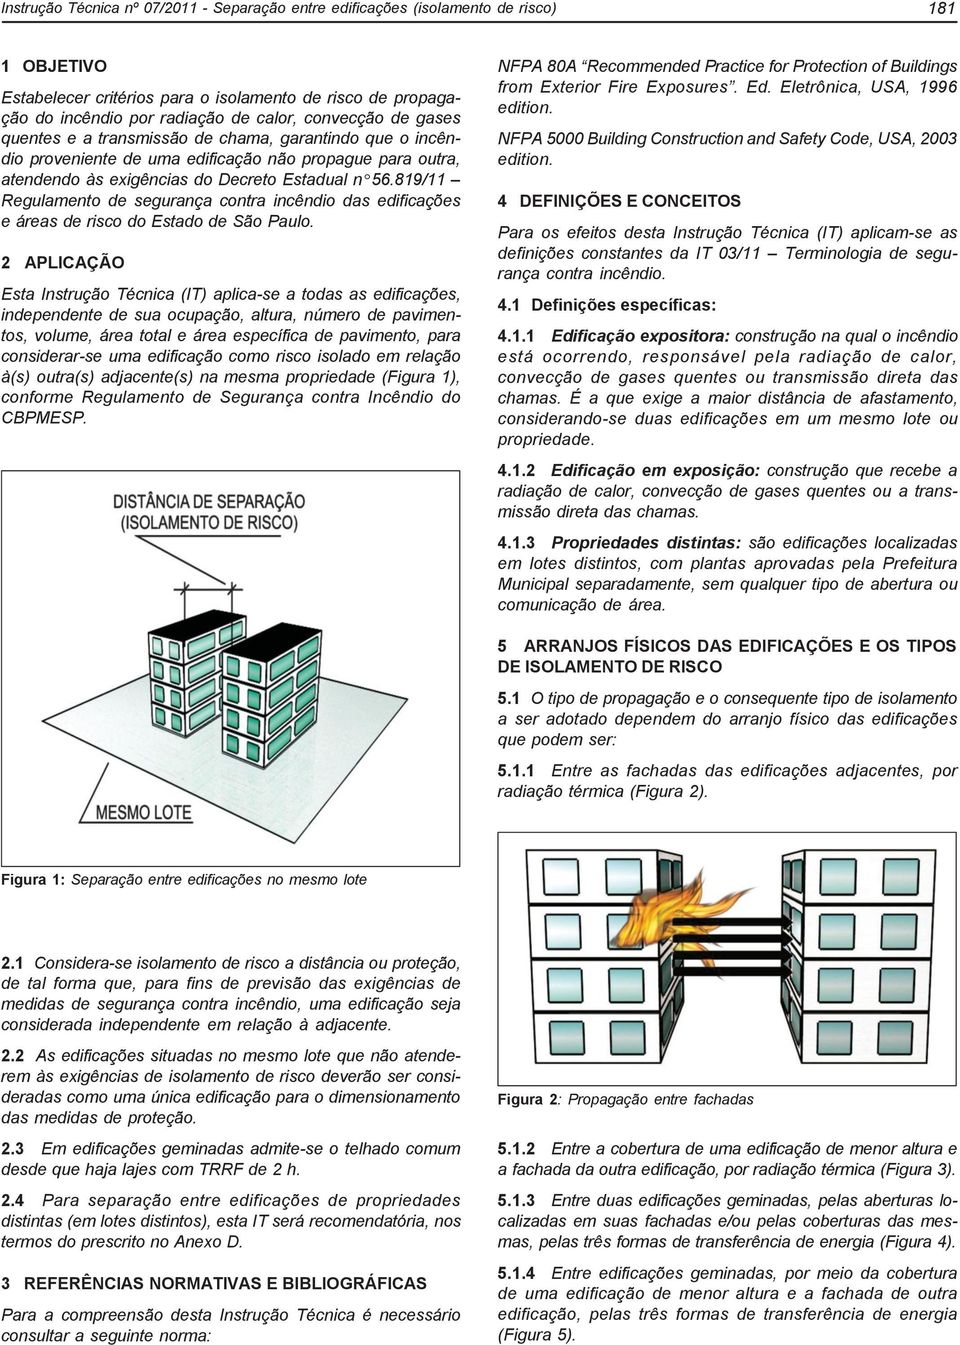 819/11 Regulamento de segurança contra incêndio das edificações e áreas de risco do Estado de São Paulo.